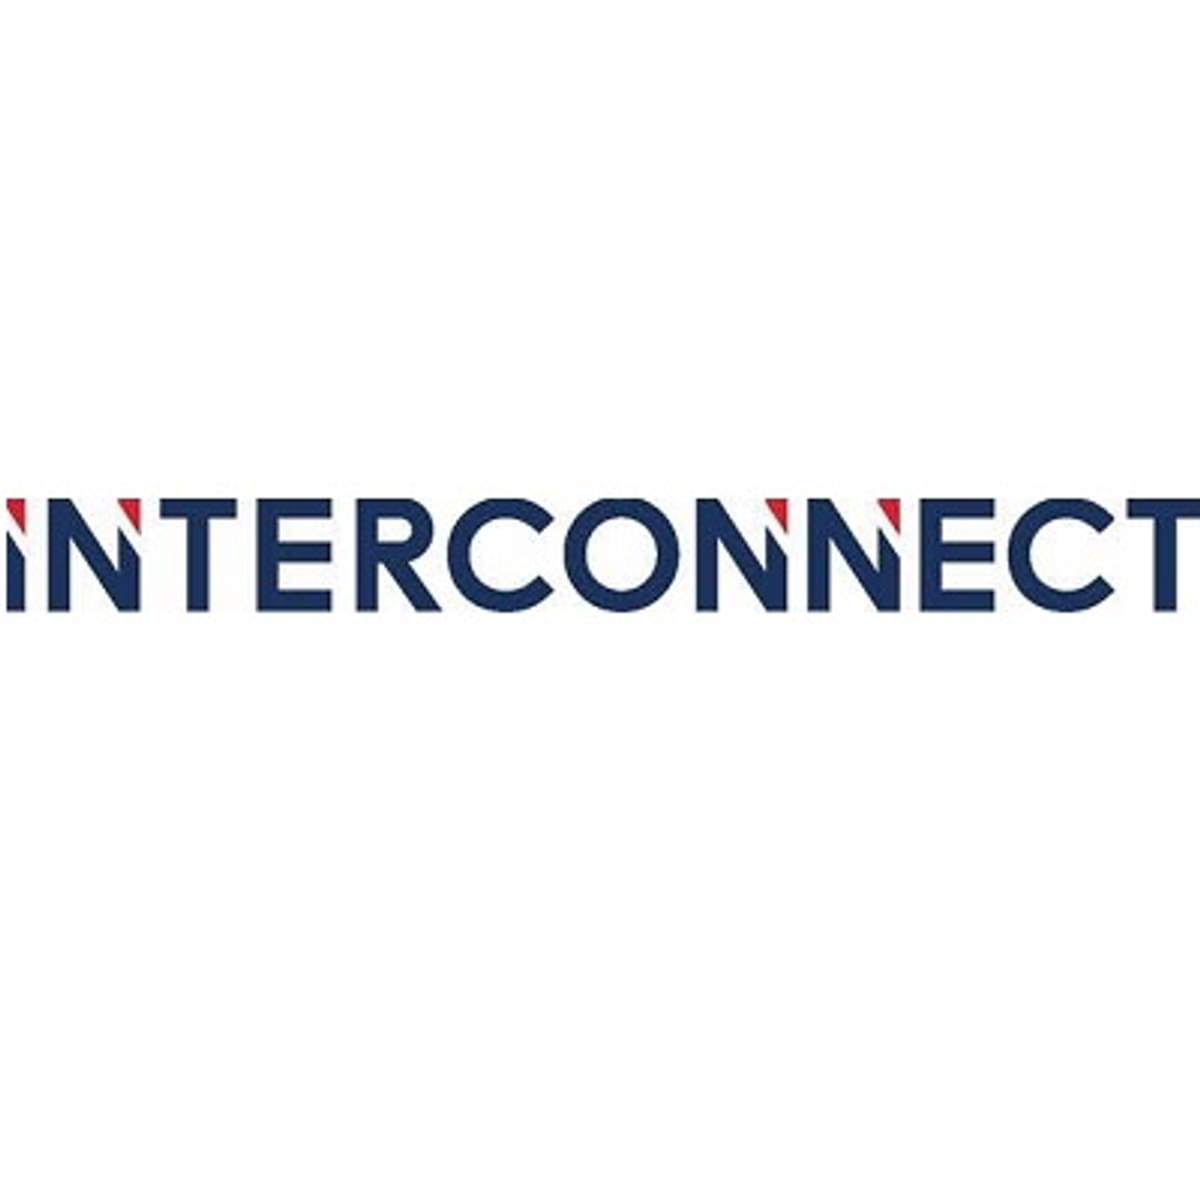 Interconnect introduceert nieuw logo image